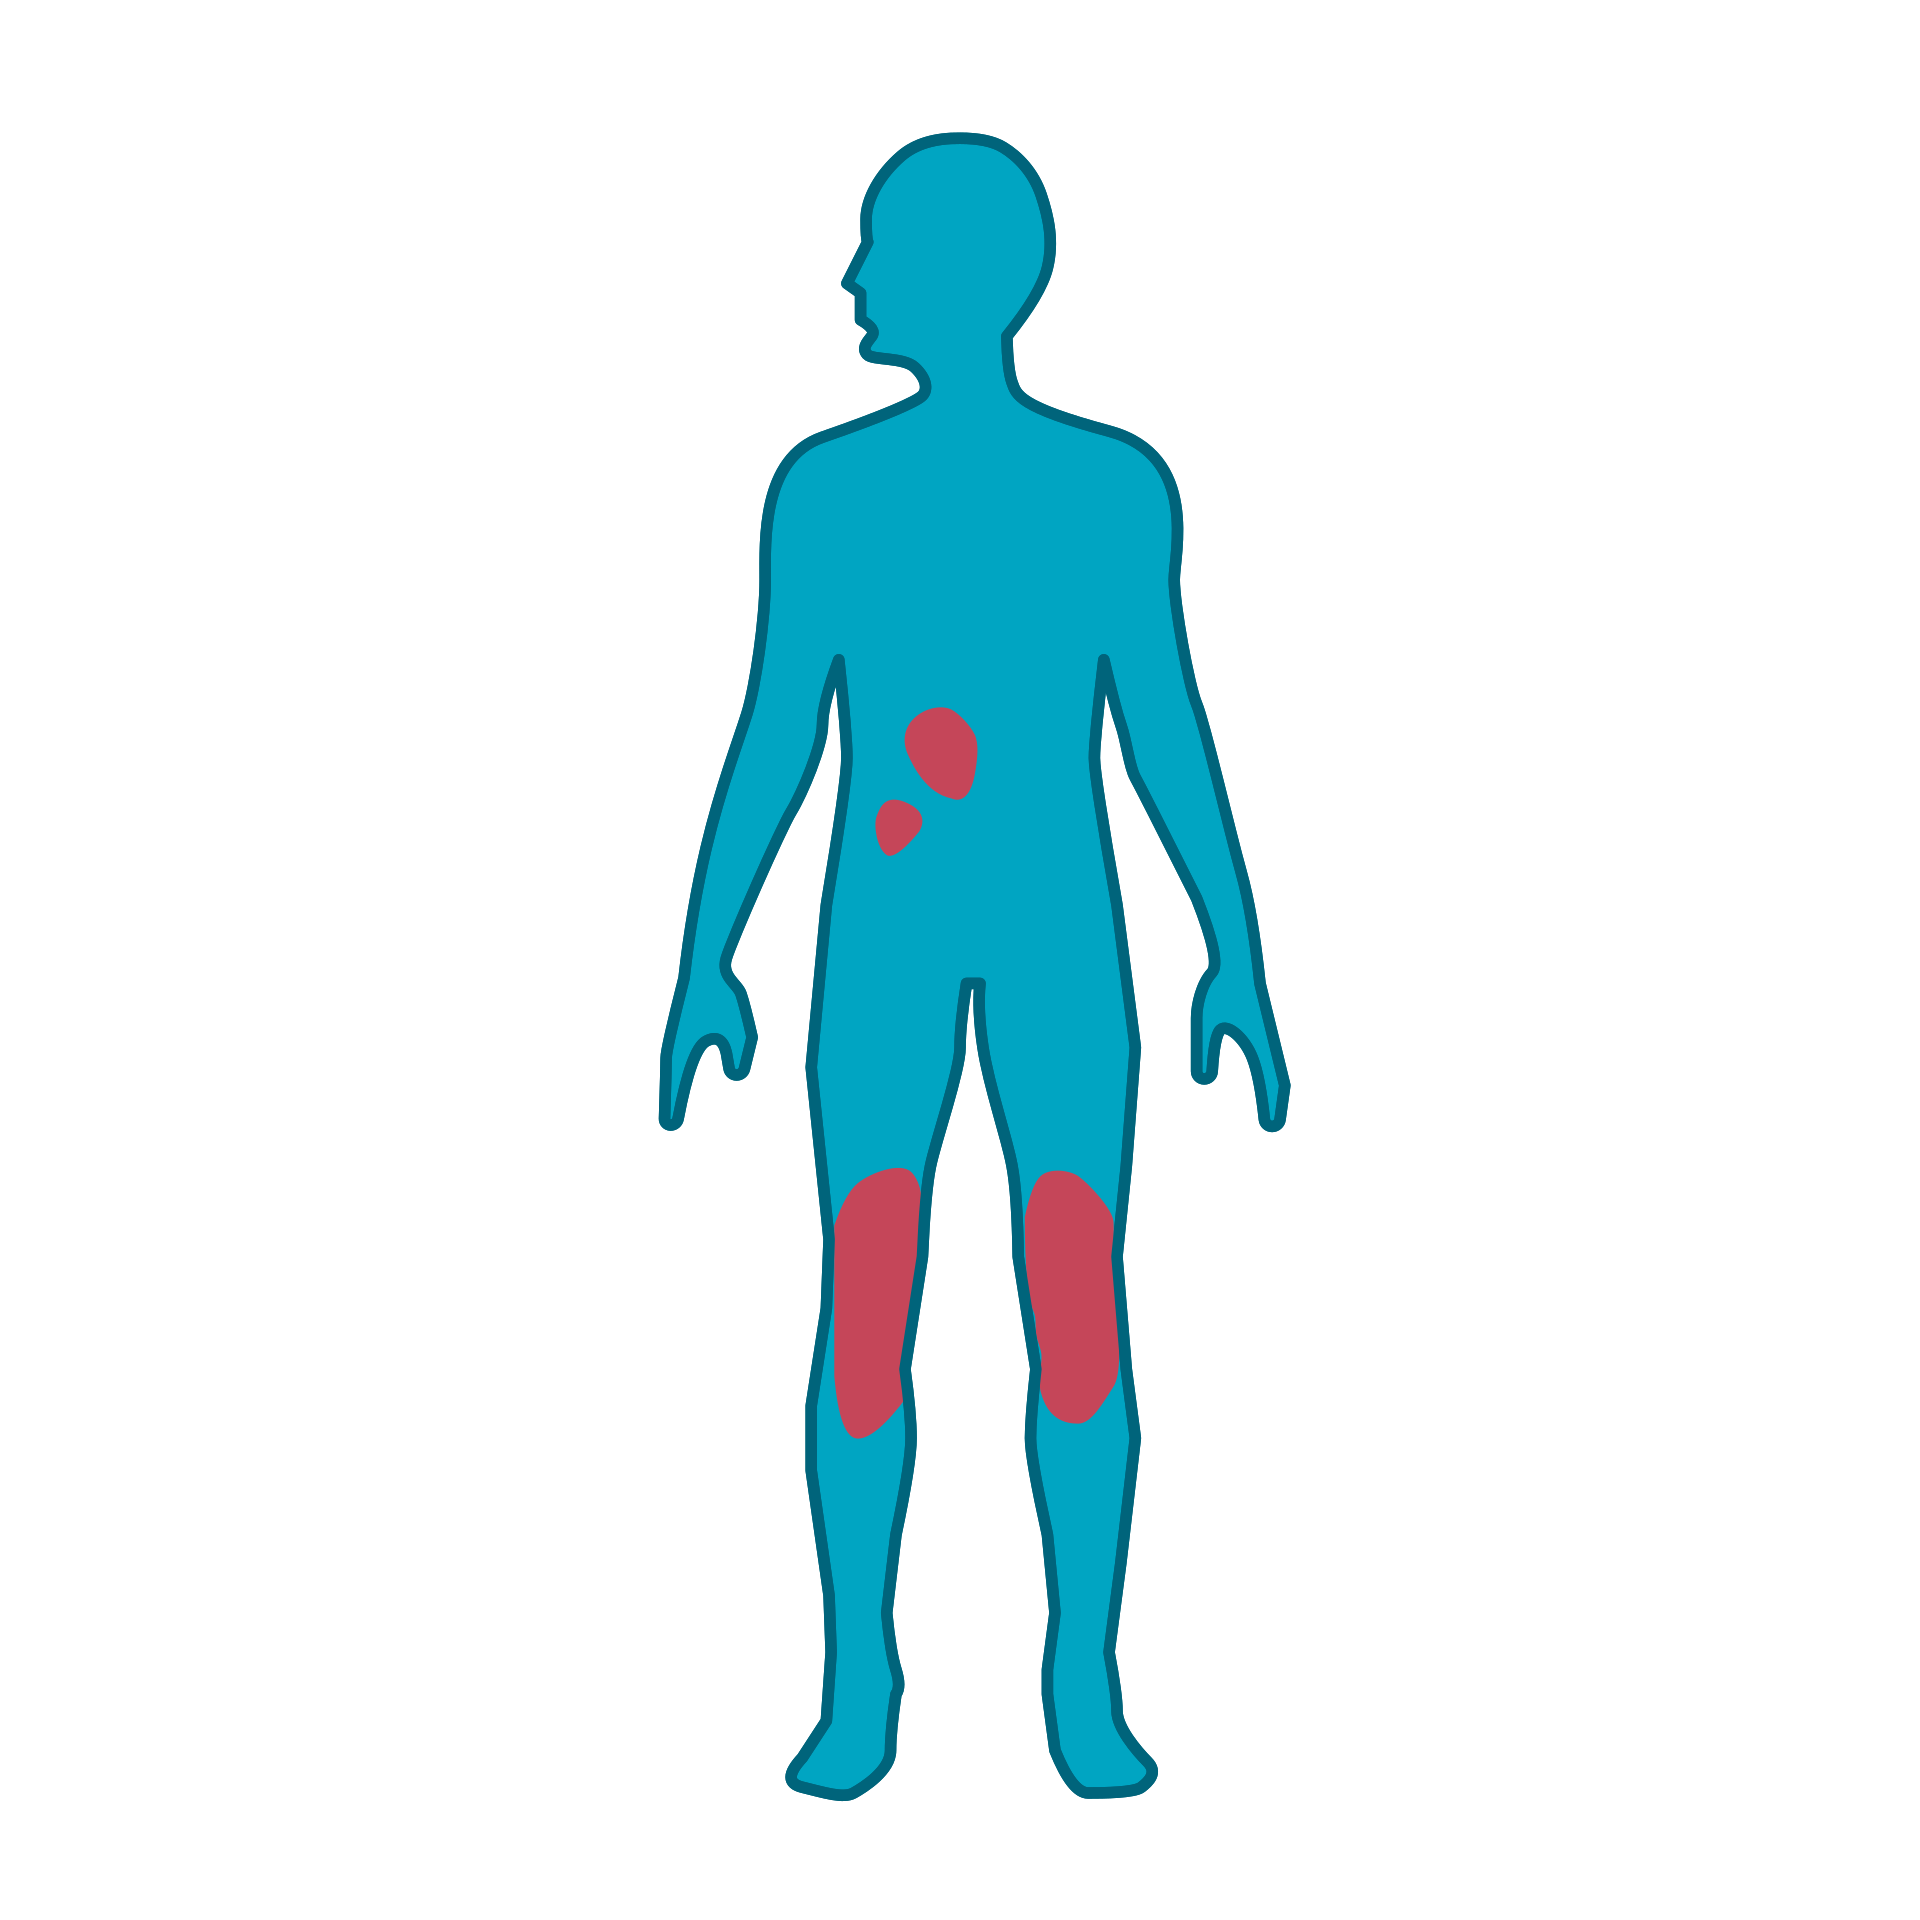 Mensch mit Psoriasis-Plaques an Beinen und Rumpf